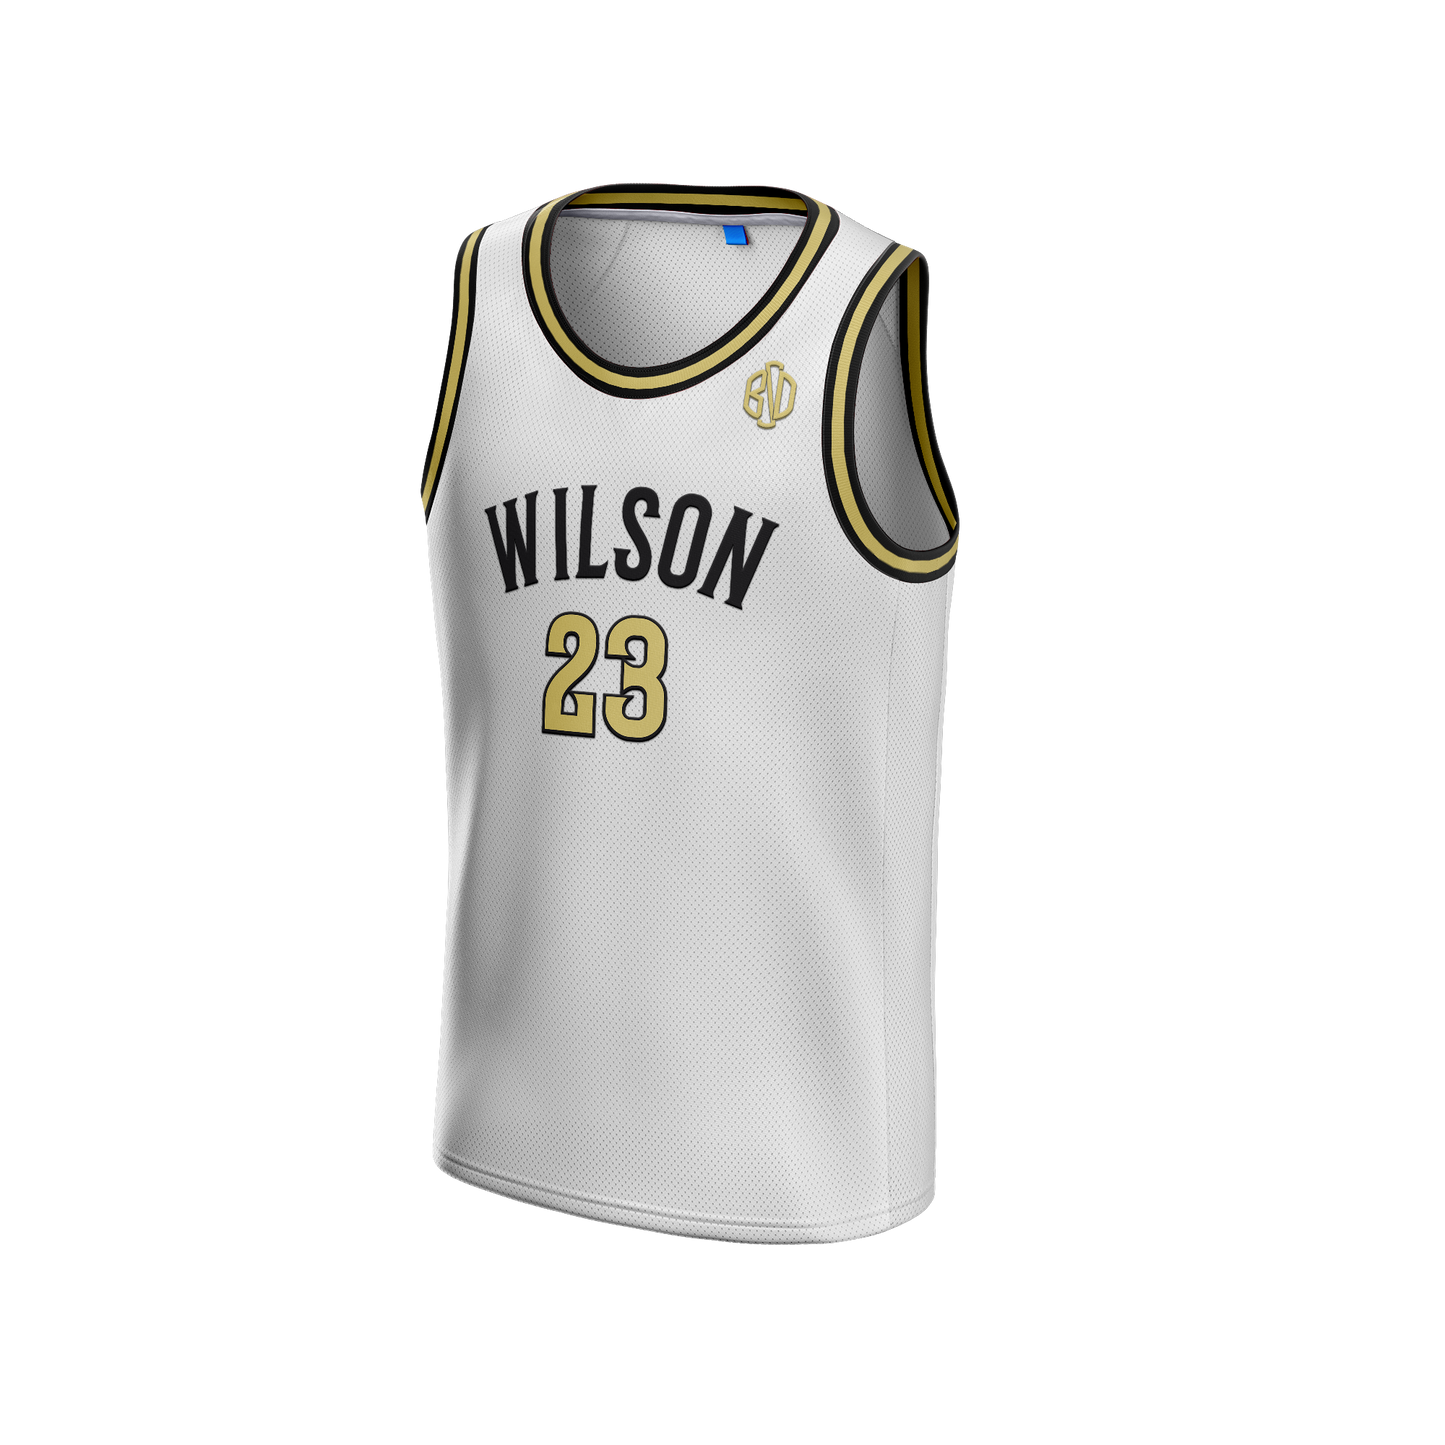 Wilson JV Team Store